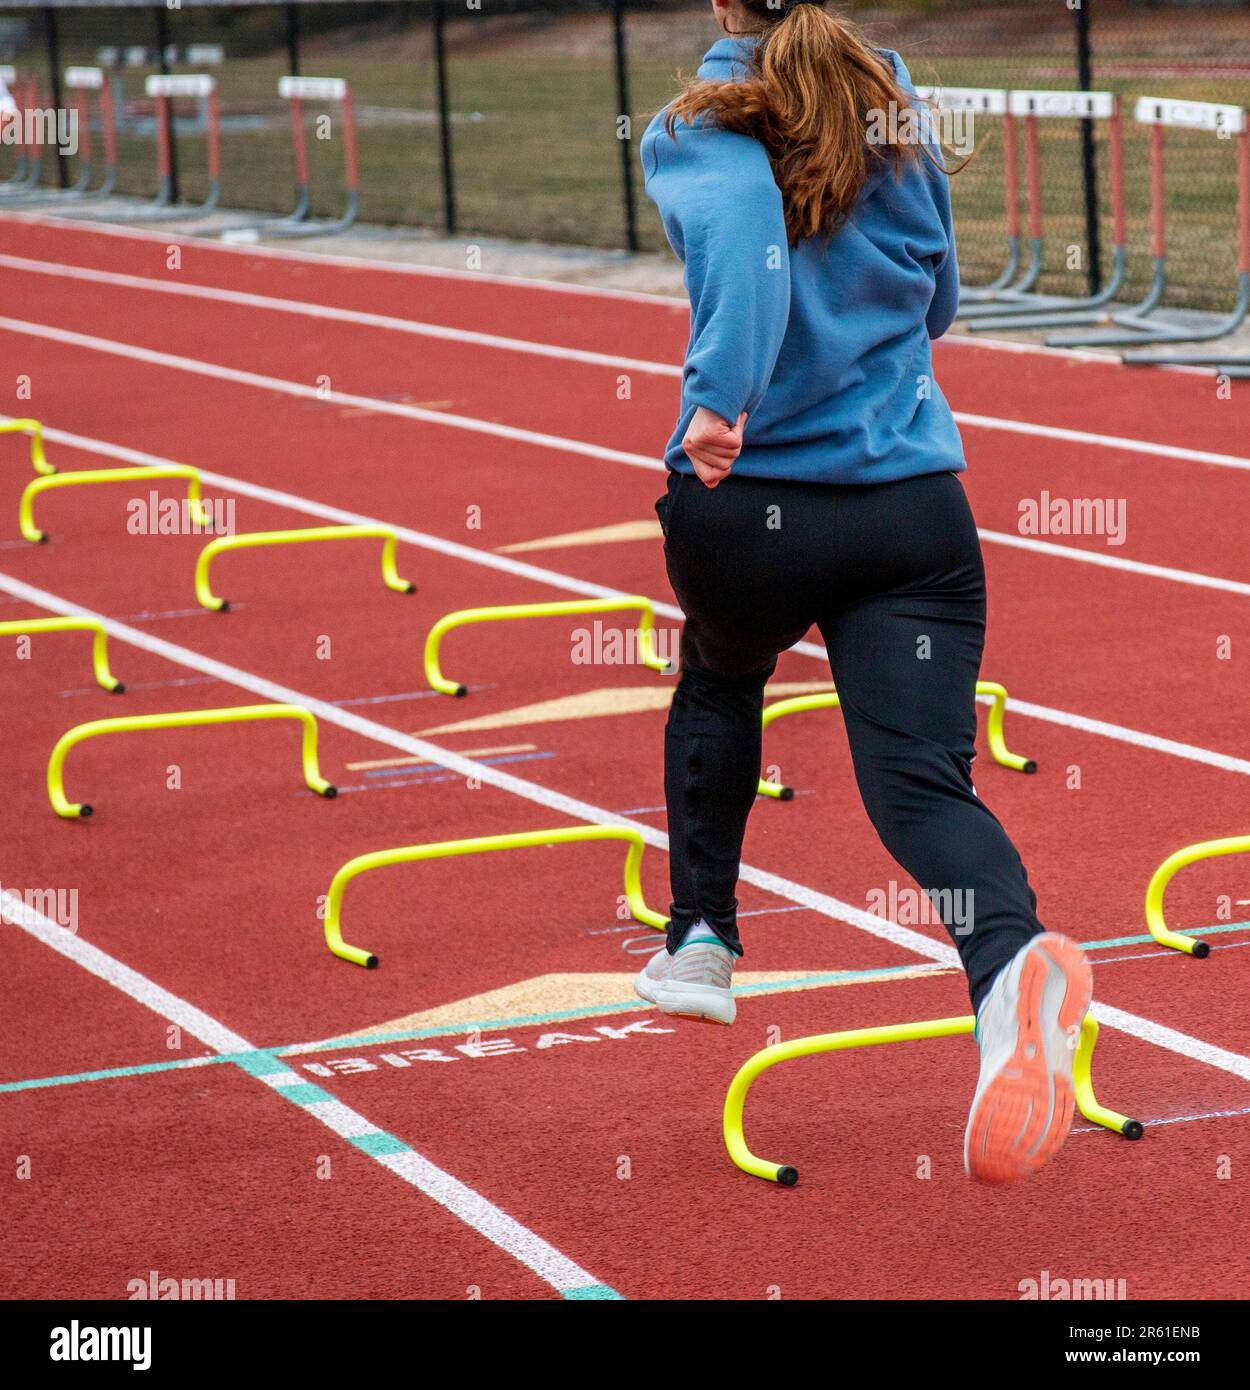 Rückansicht eines Highschool-Leichtathletikmädchens, das während des Trainings für Geschwindigkeit und Beweglichkeit auf einer roten Strecke über kleine gelbe Hürden auf der Spur springt. Stockfoto